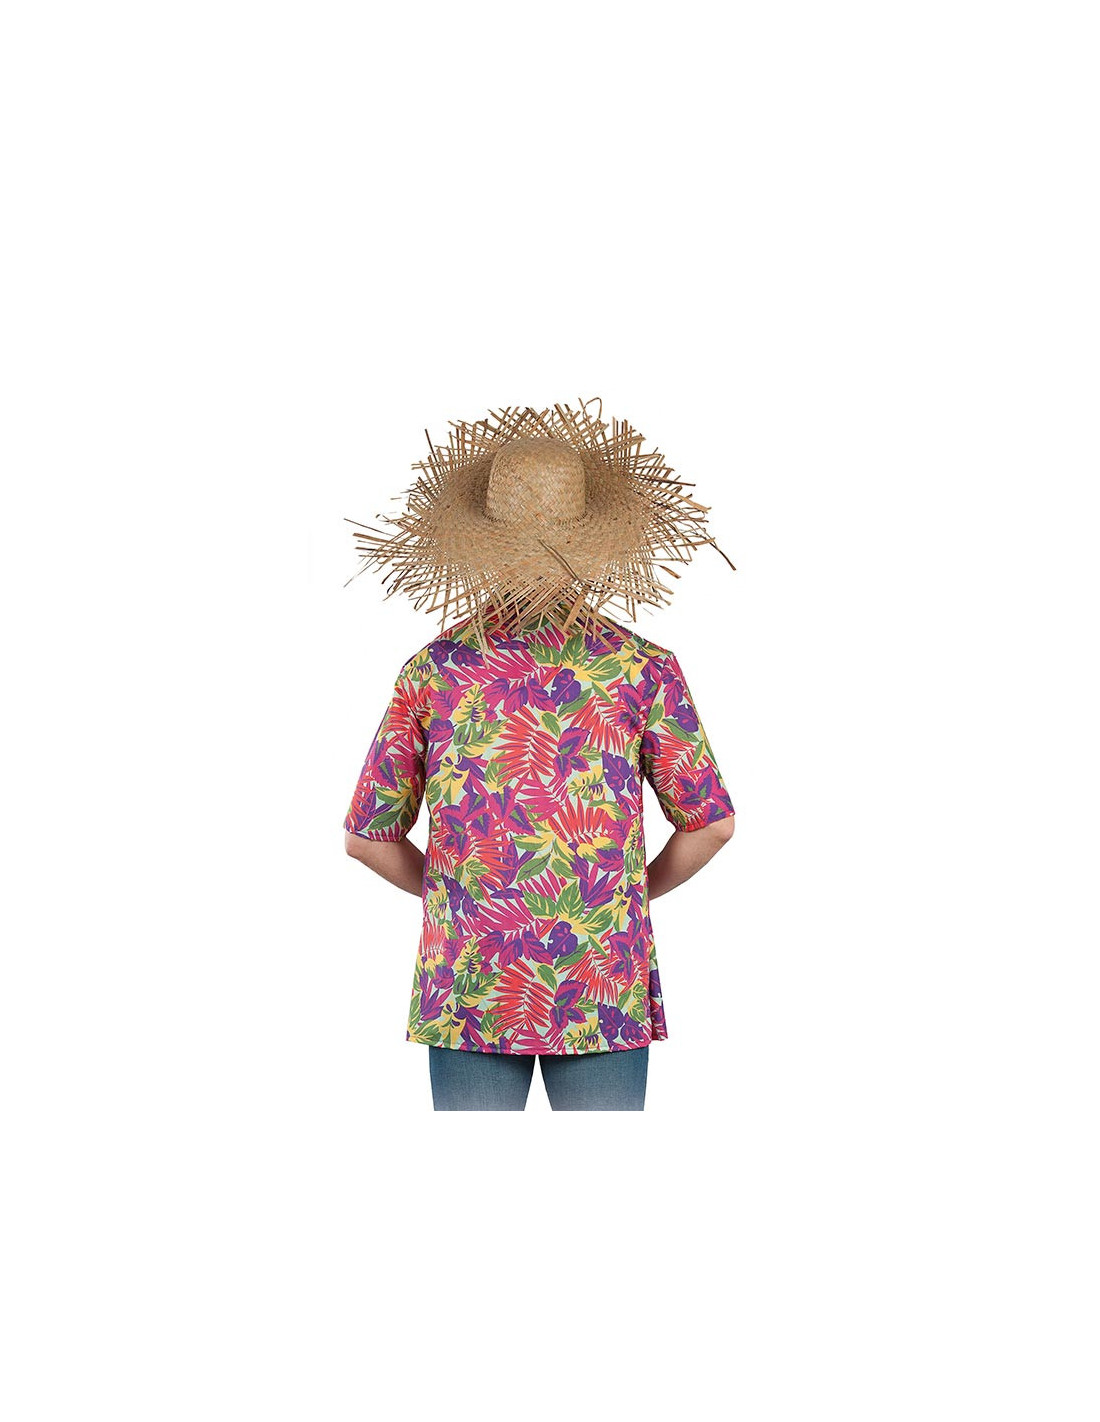 Sombrero de paja desfilorchado - Comprar en Tienda Disfraces Bacanal